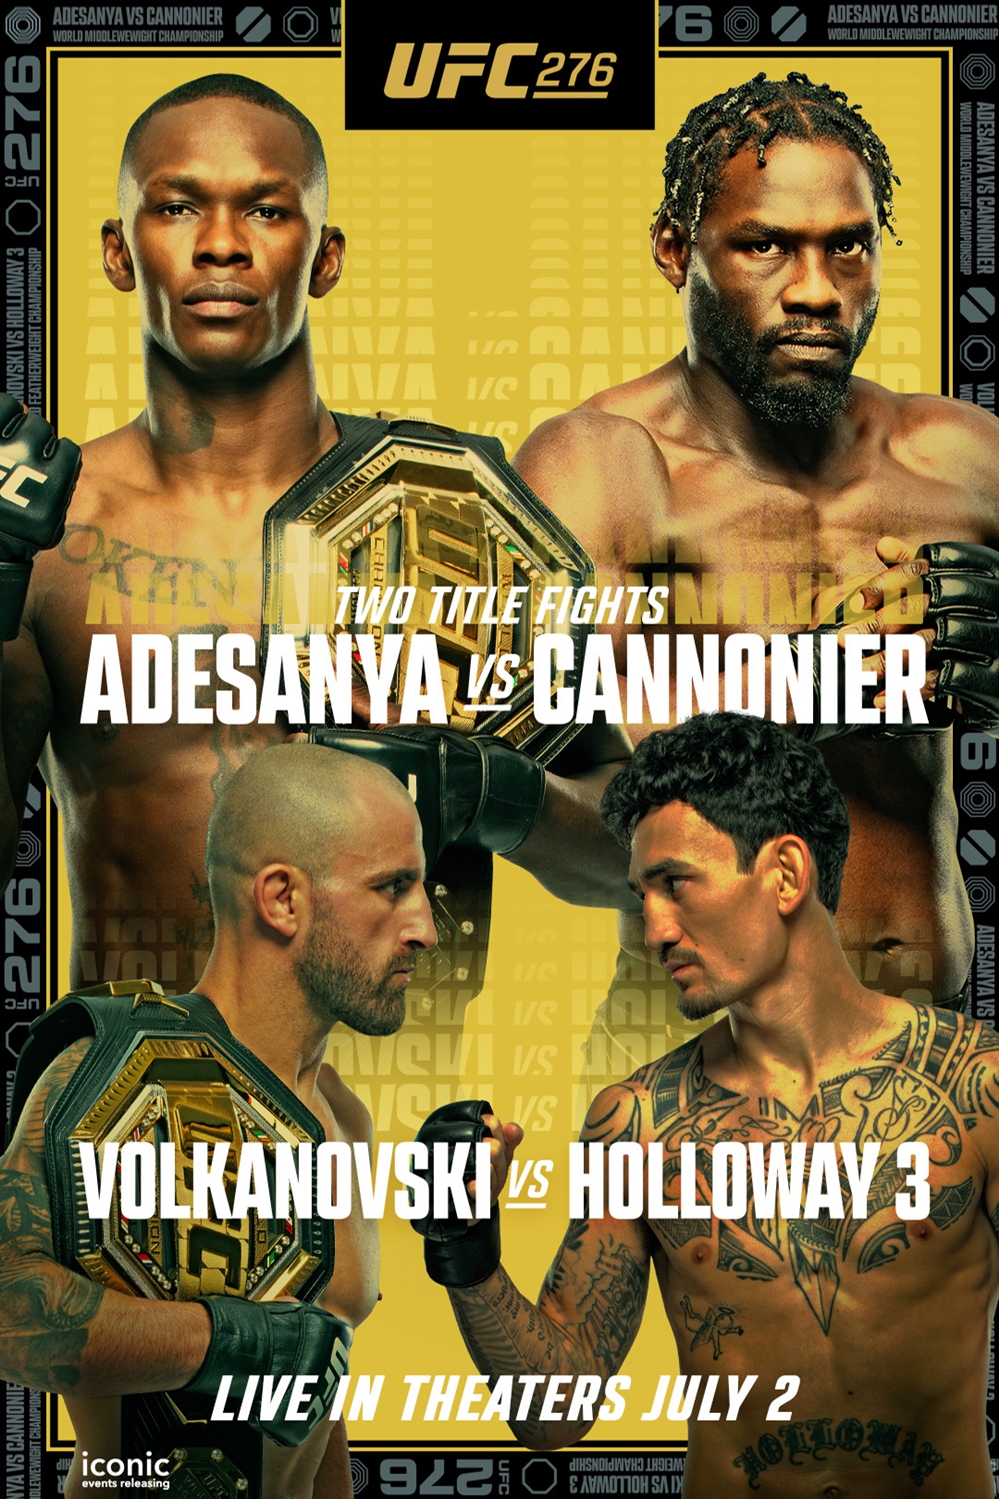 Still of UFC 276: Adesanya vs. Cannonier